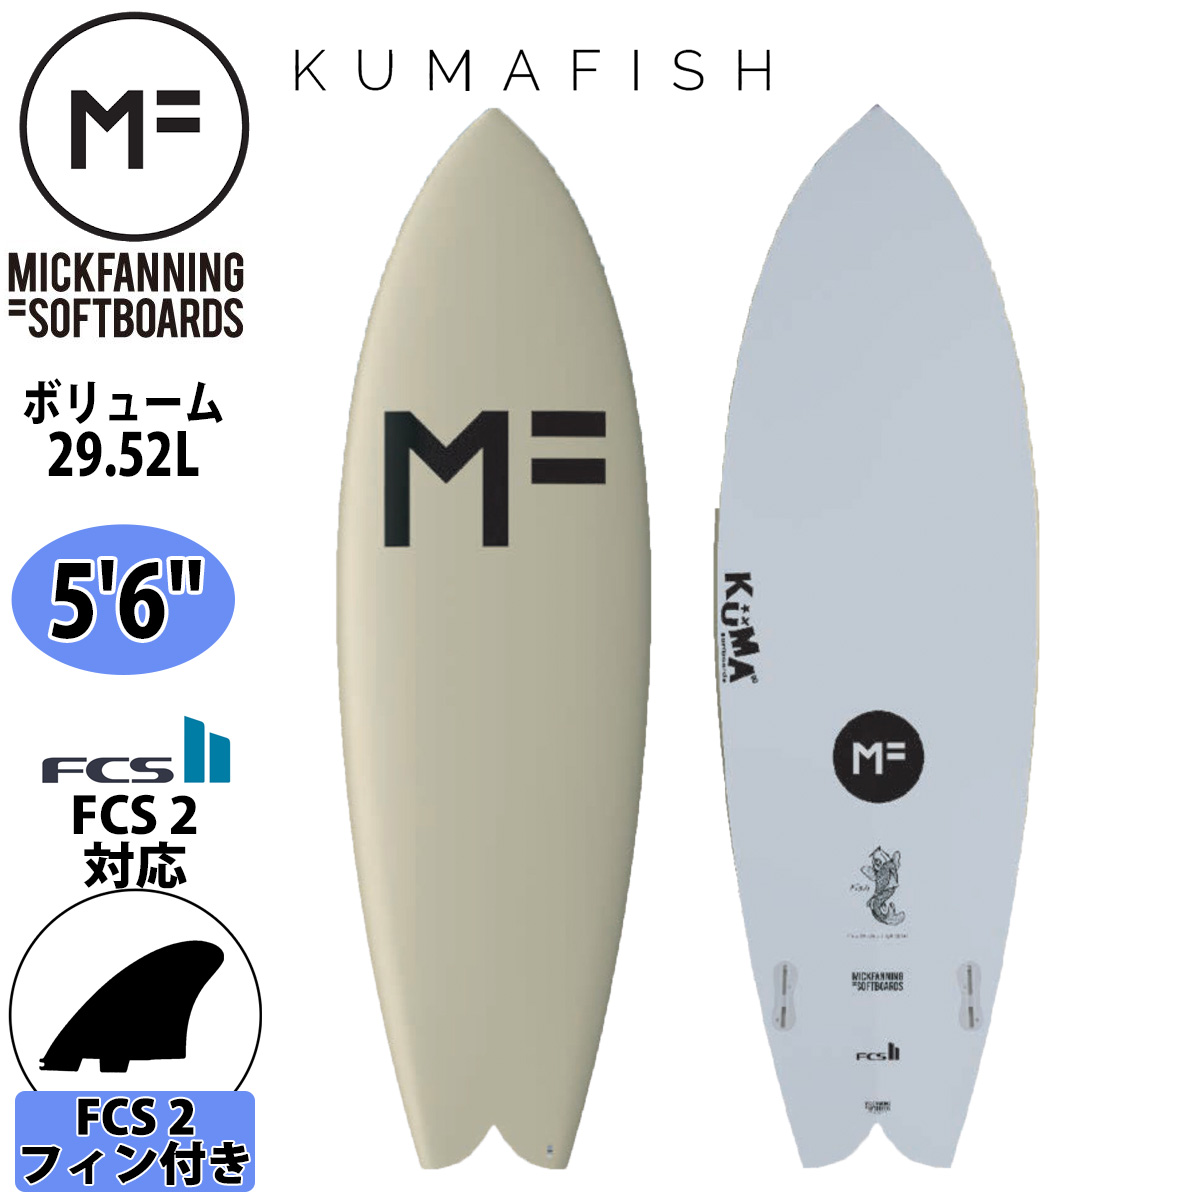 2021年モデル MF 毎週更新 NEW売り切れる前に☆ ミックファニング ソフトボード サーフボード KUMAFISH 5'6 クマフィッシュ MICK F21-MF-KUS-506 SOFTBOARD boards soft 品番 FANNING シリーズ 日本正規品